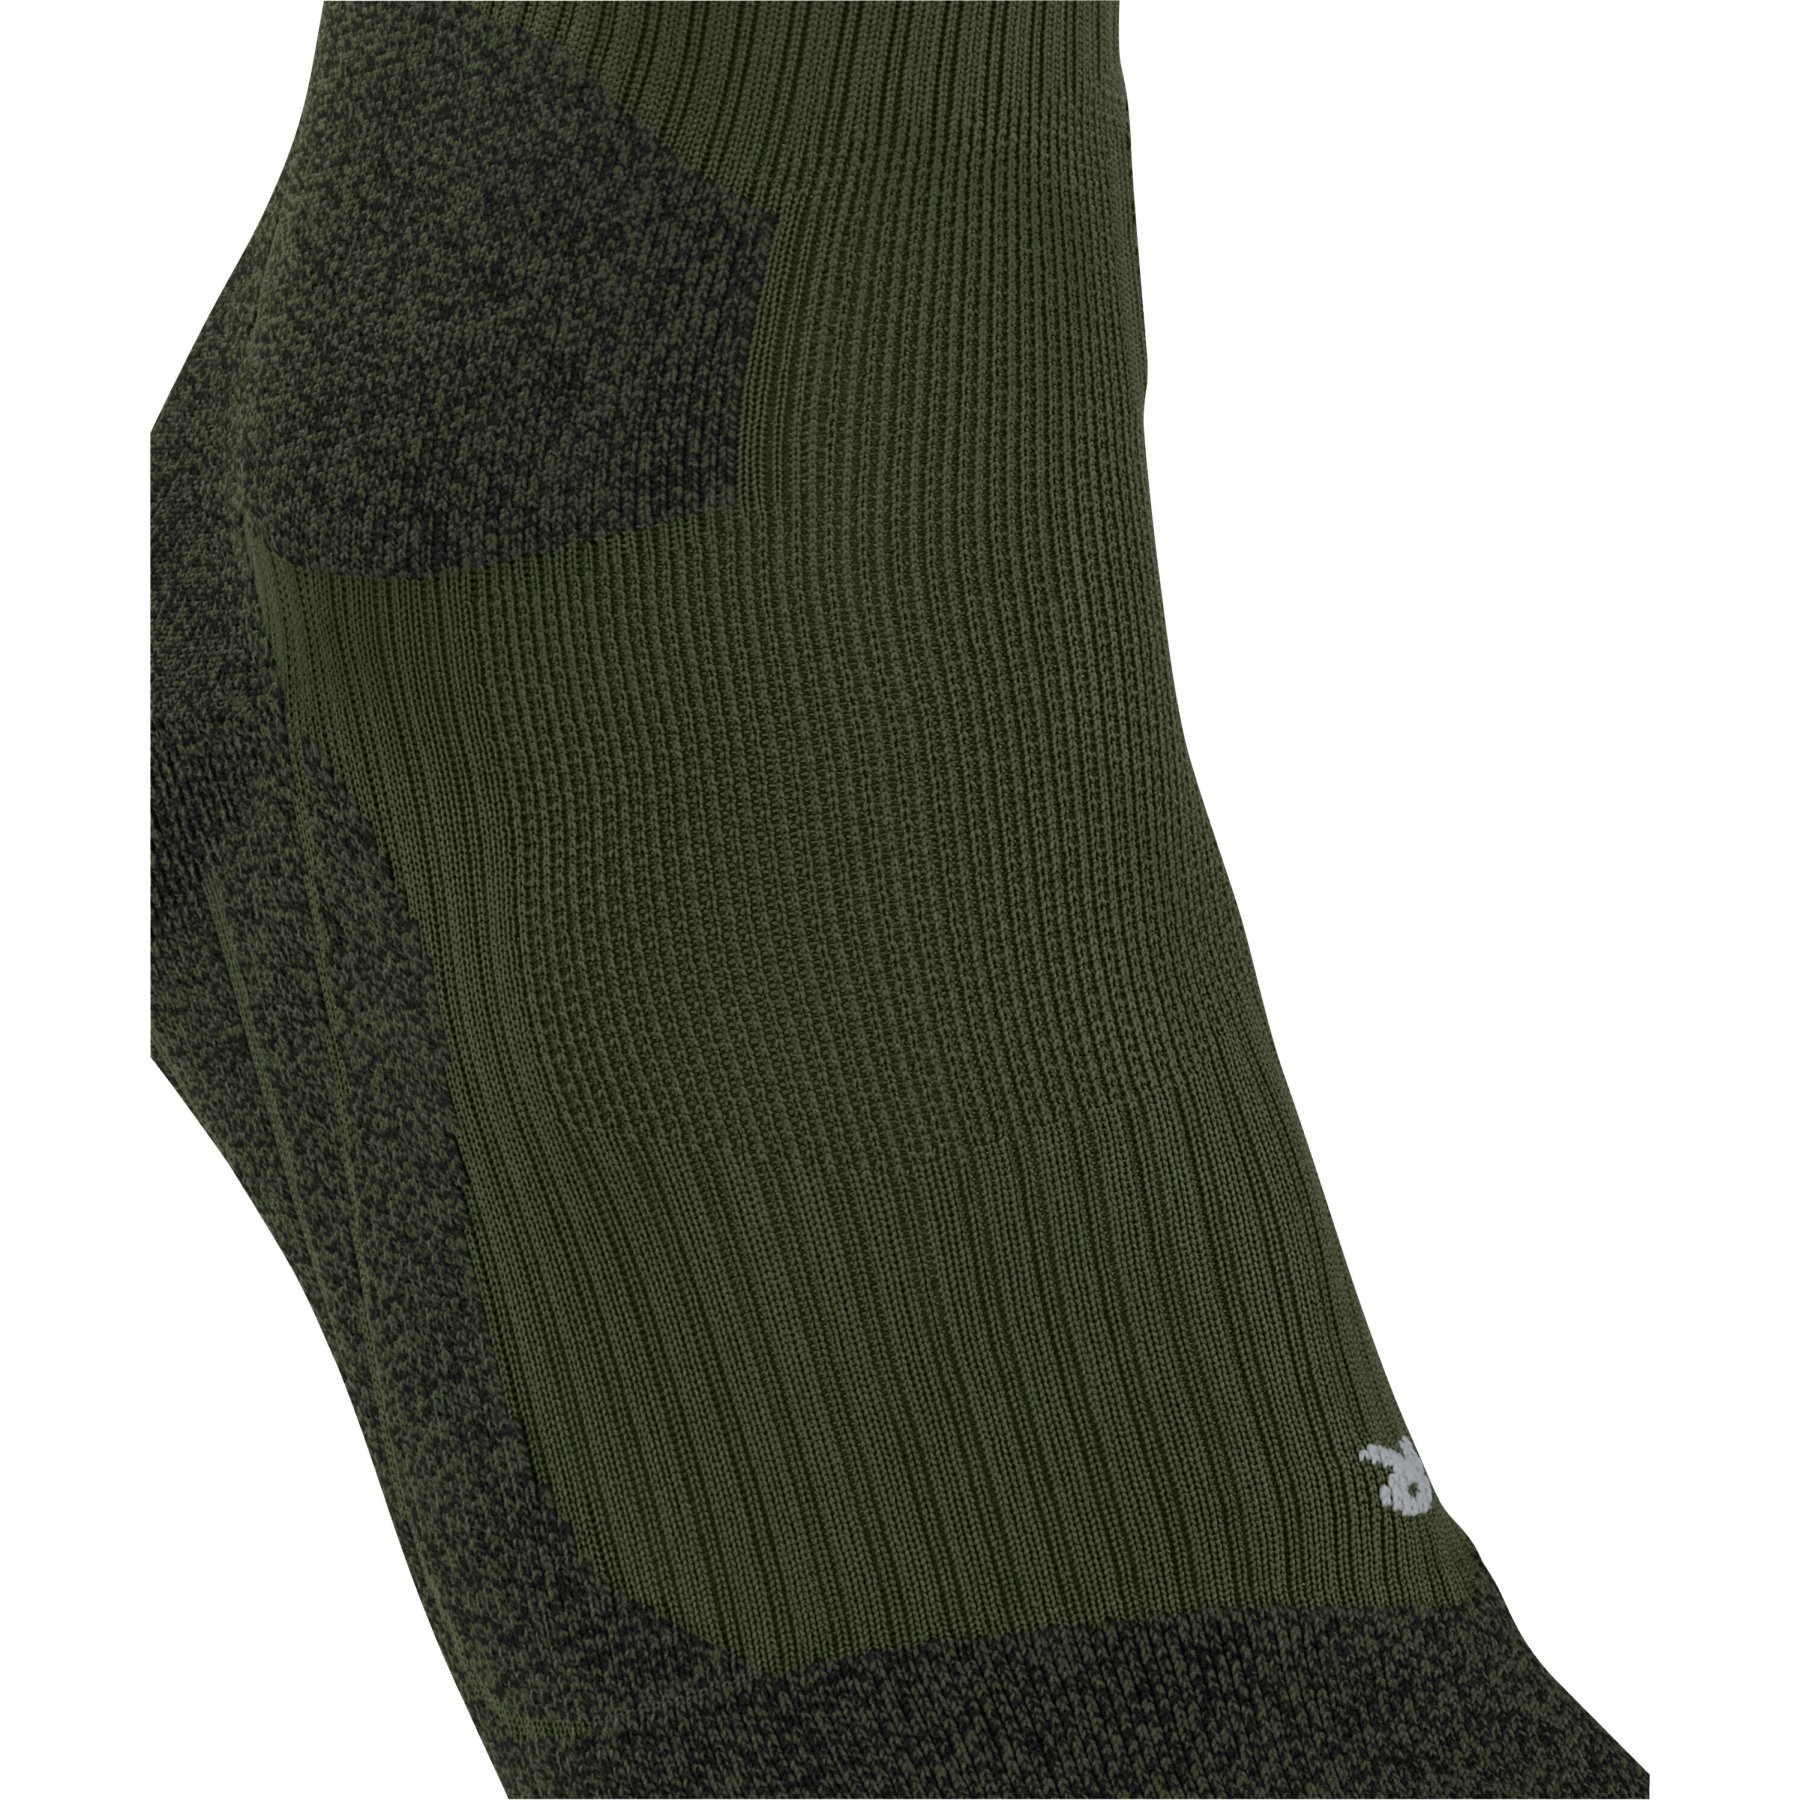 Women's socks Falke RU Trail Grip - Socks - Women's wear